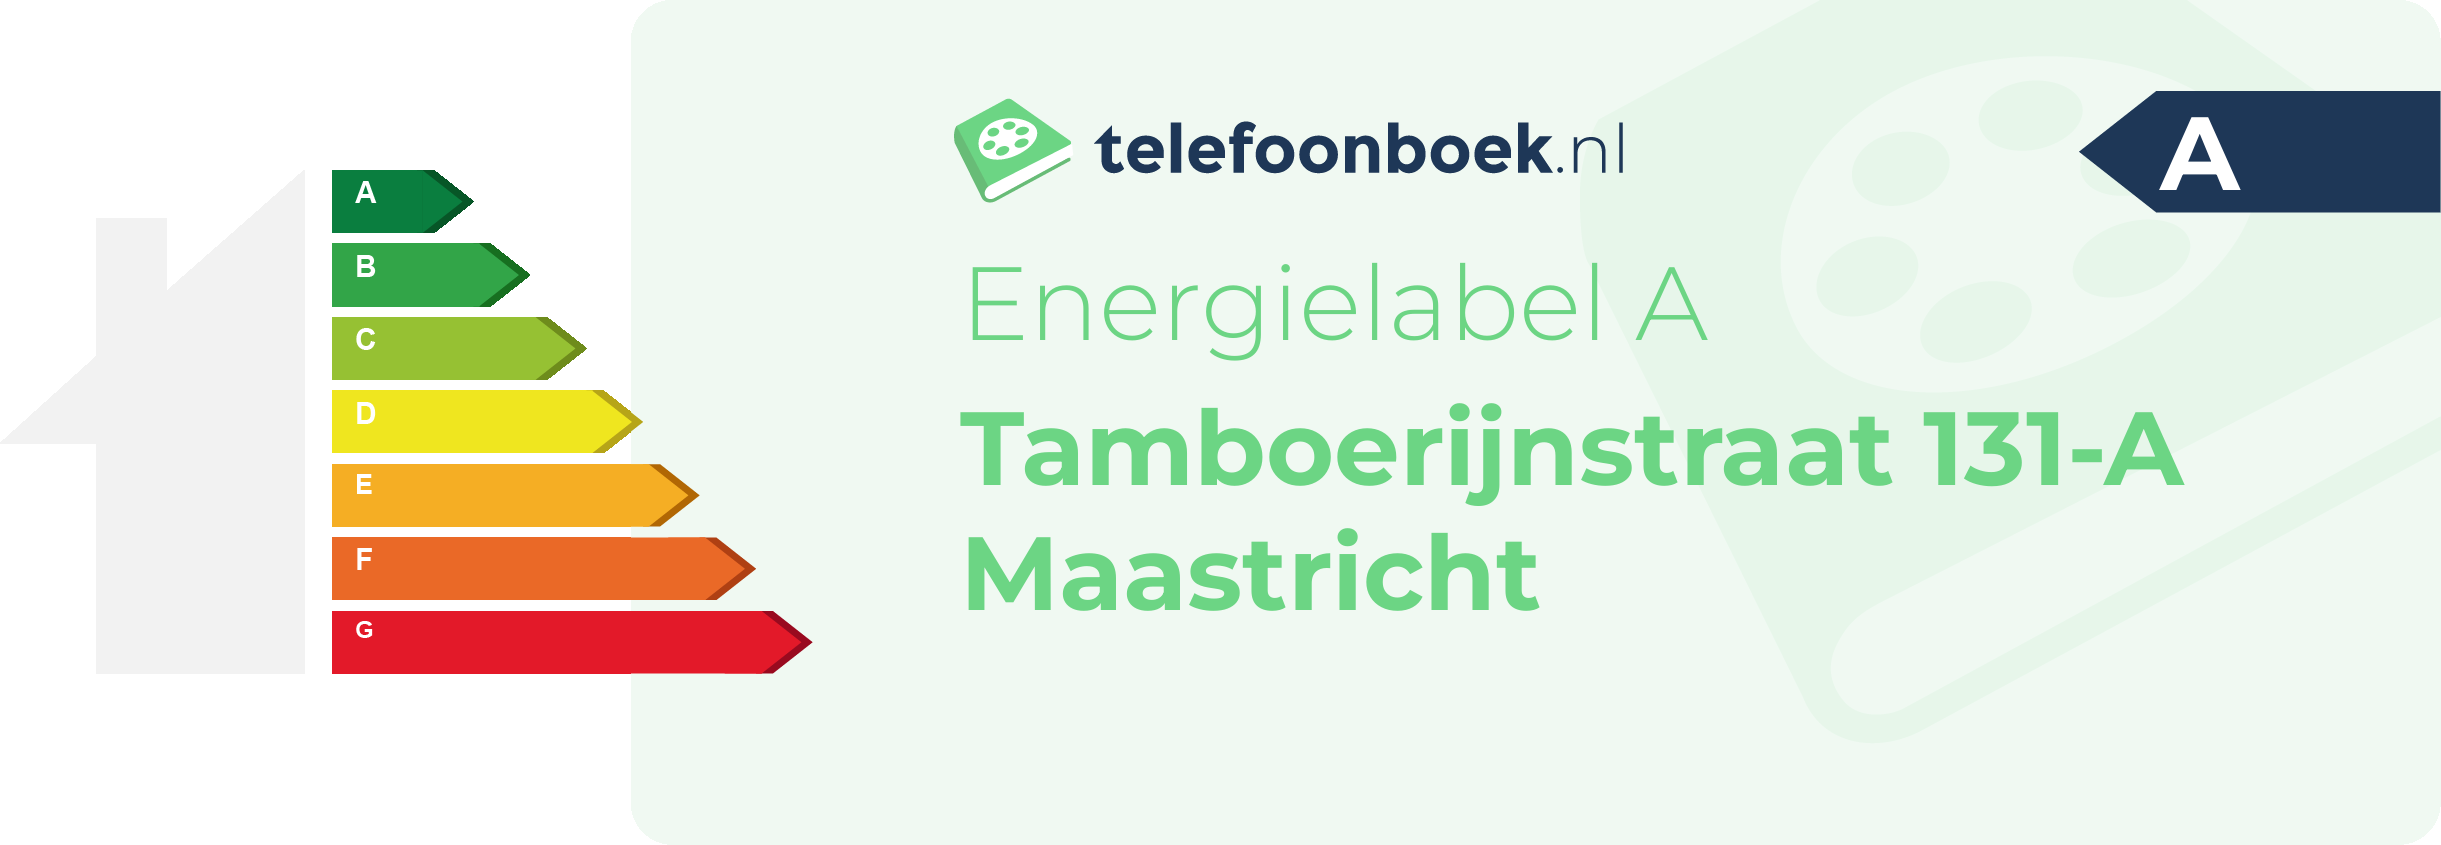 Energielabel Tamboerijnstraat 131-A Maastricht